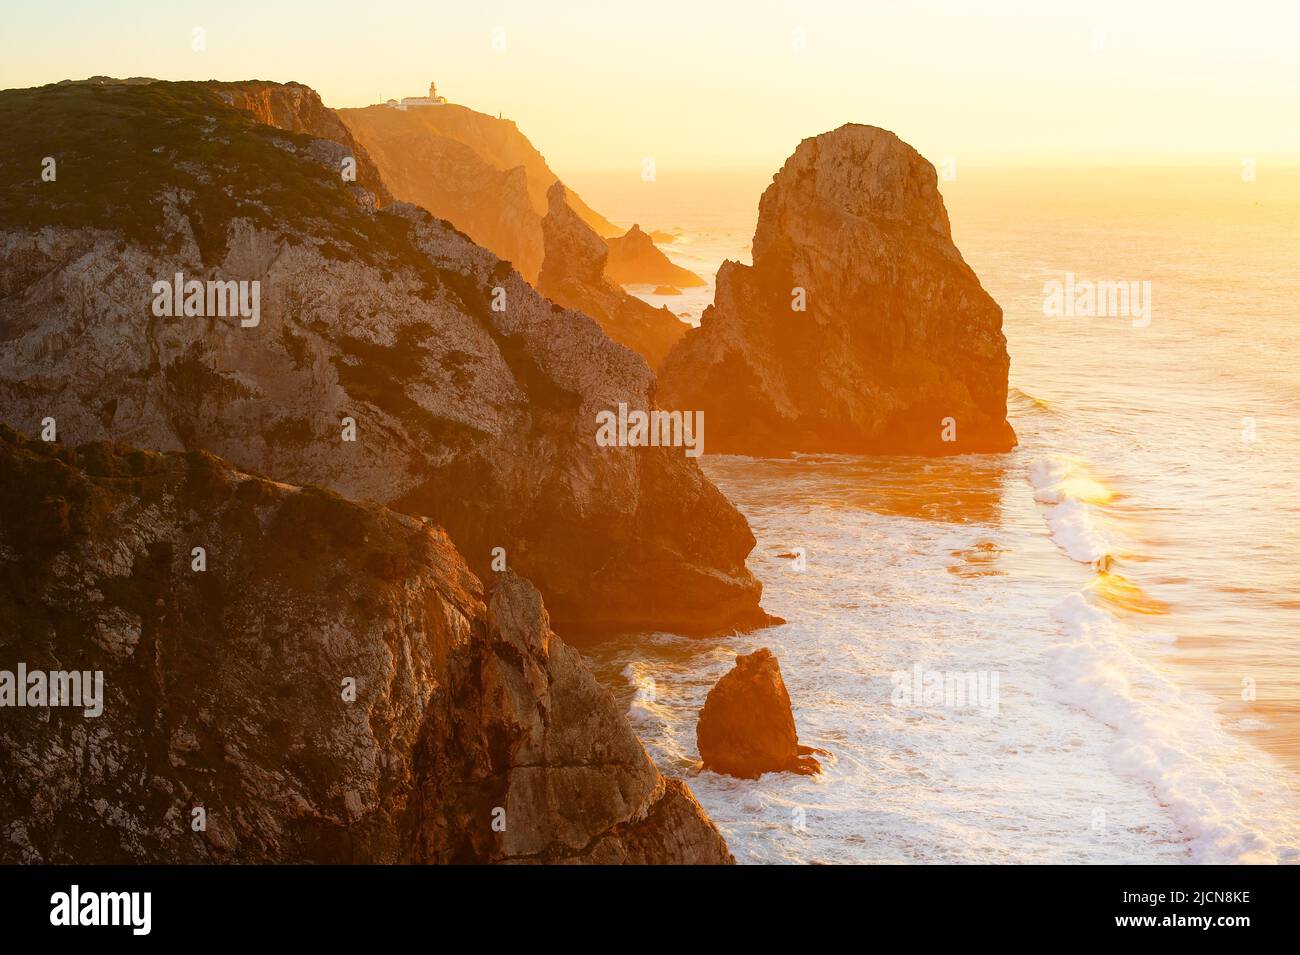 Vista de Cabo da Roca al atardecer, escénico paisaje marino del océano Atlántico y rocas, Portugal Foto de stock